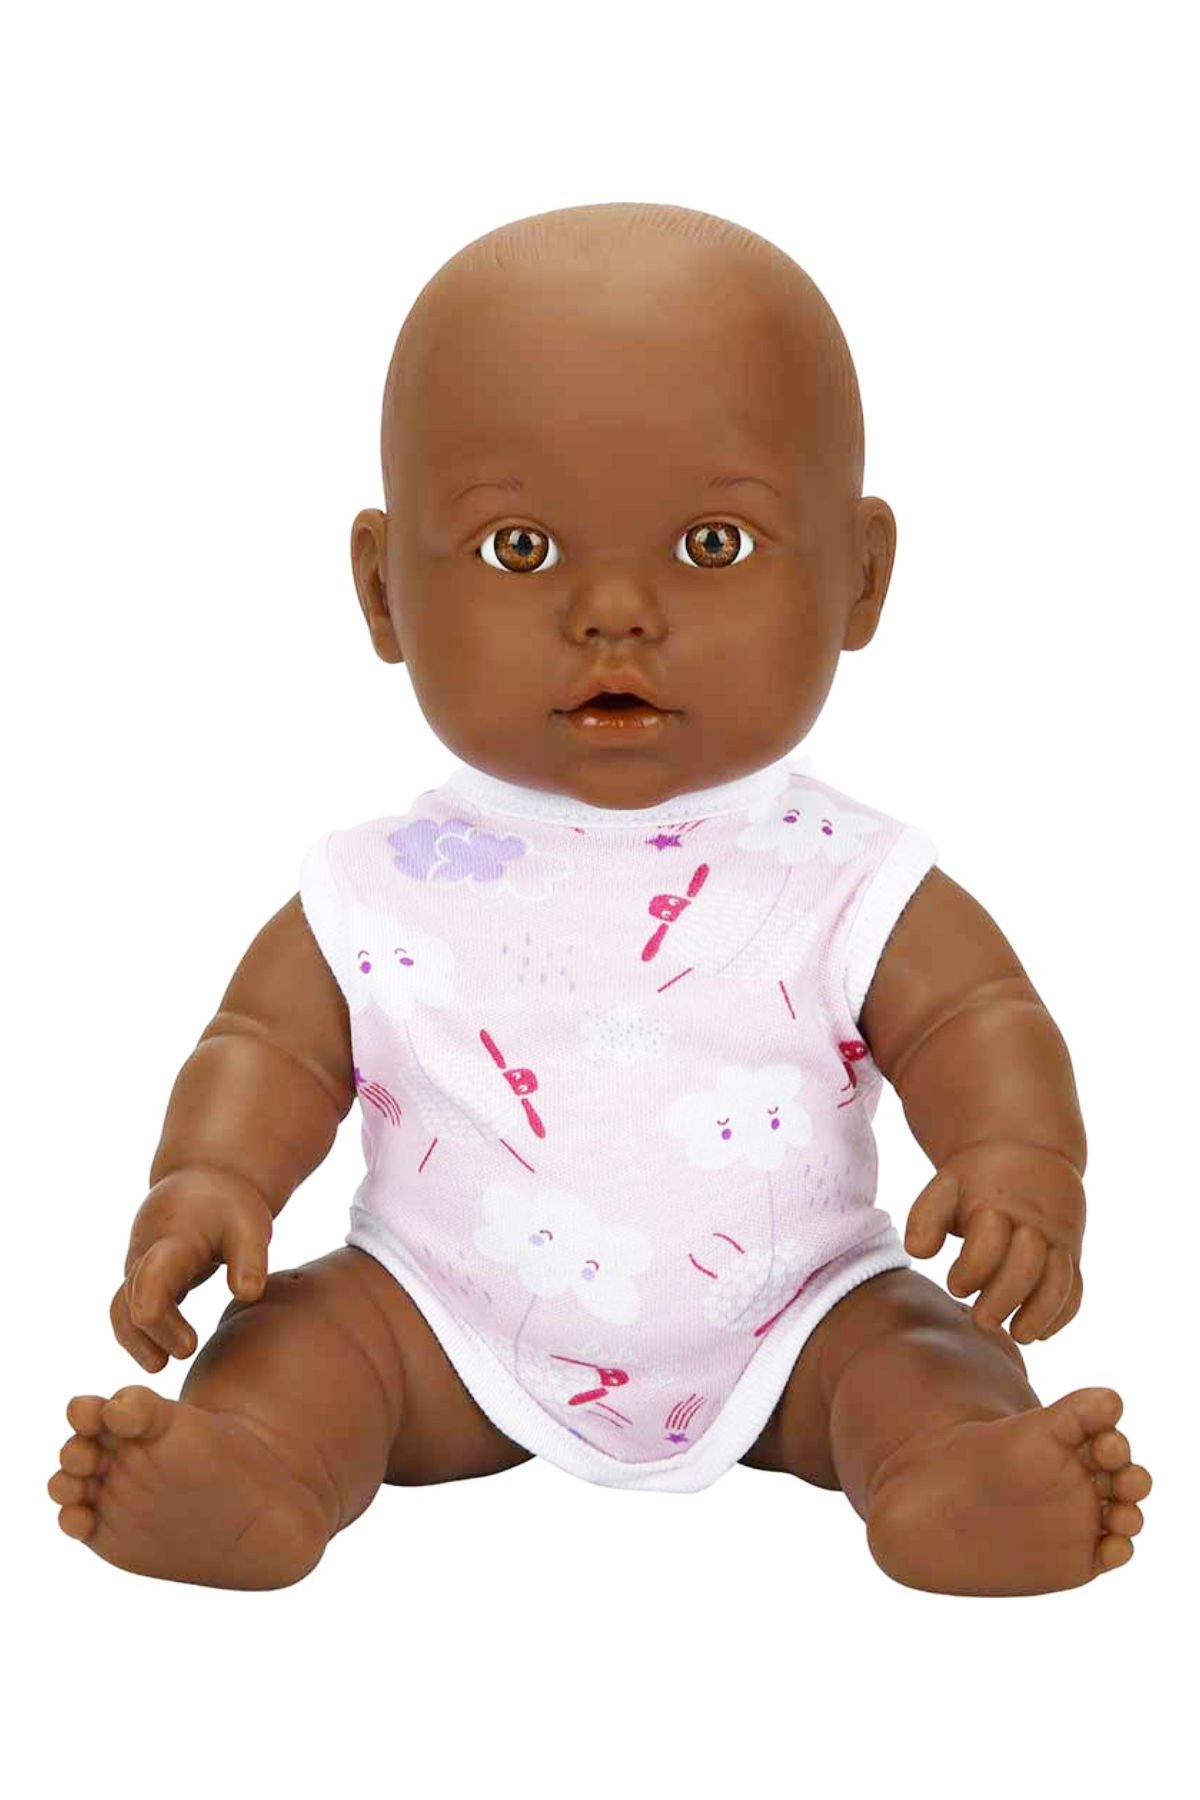 Sevgi Dolu Bir Arkadaş: Dada Bebek 35 cm Oyuncak Bebek